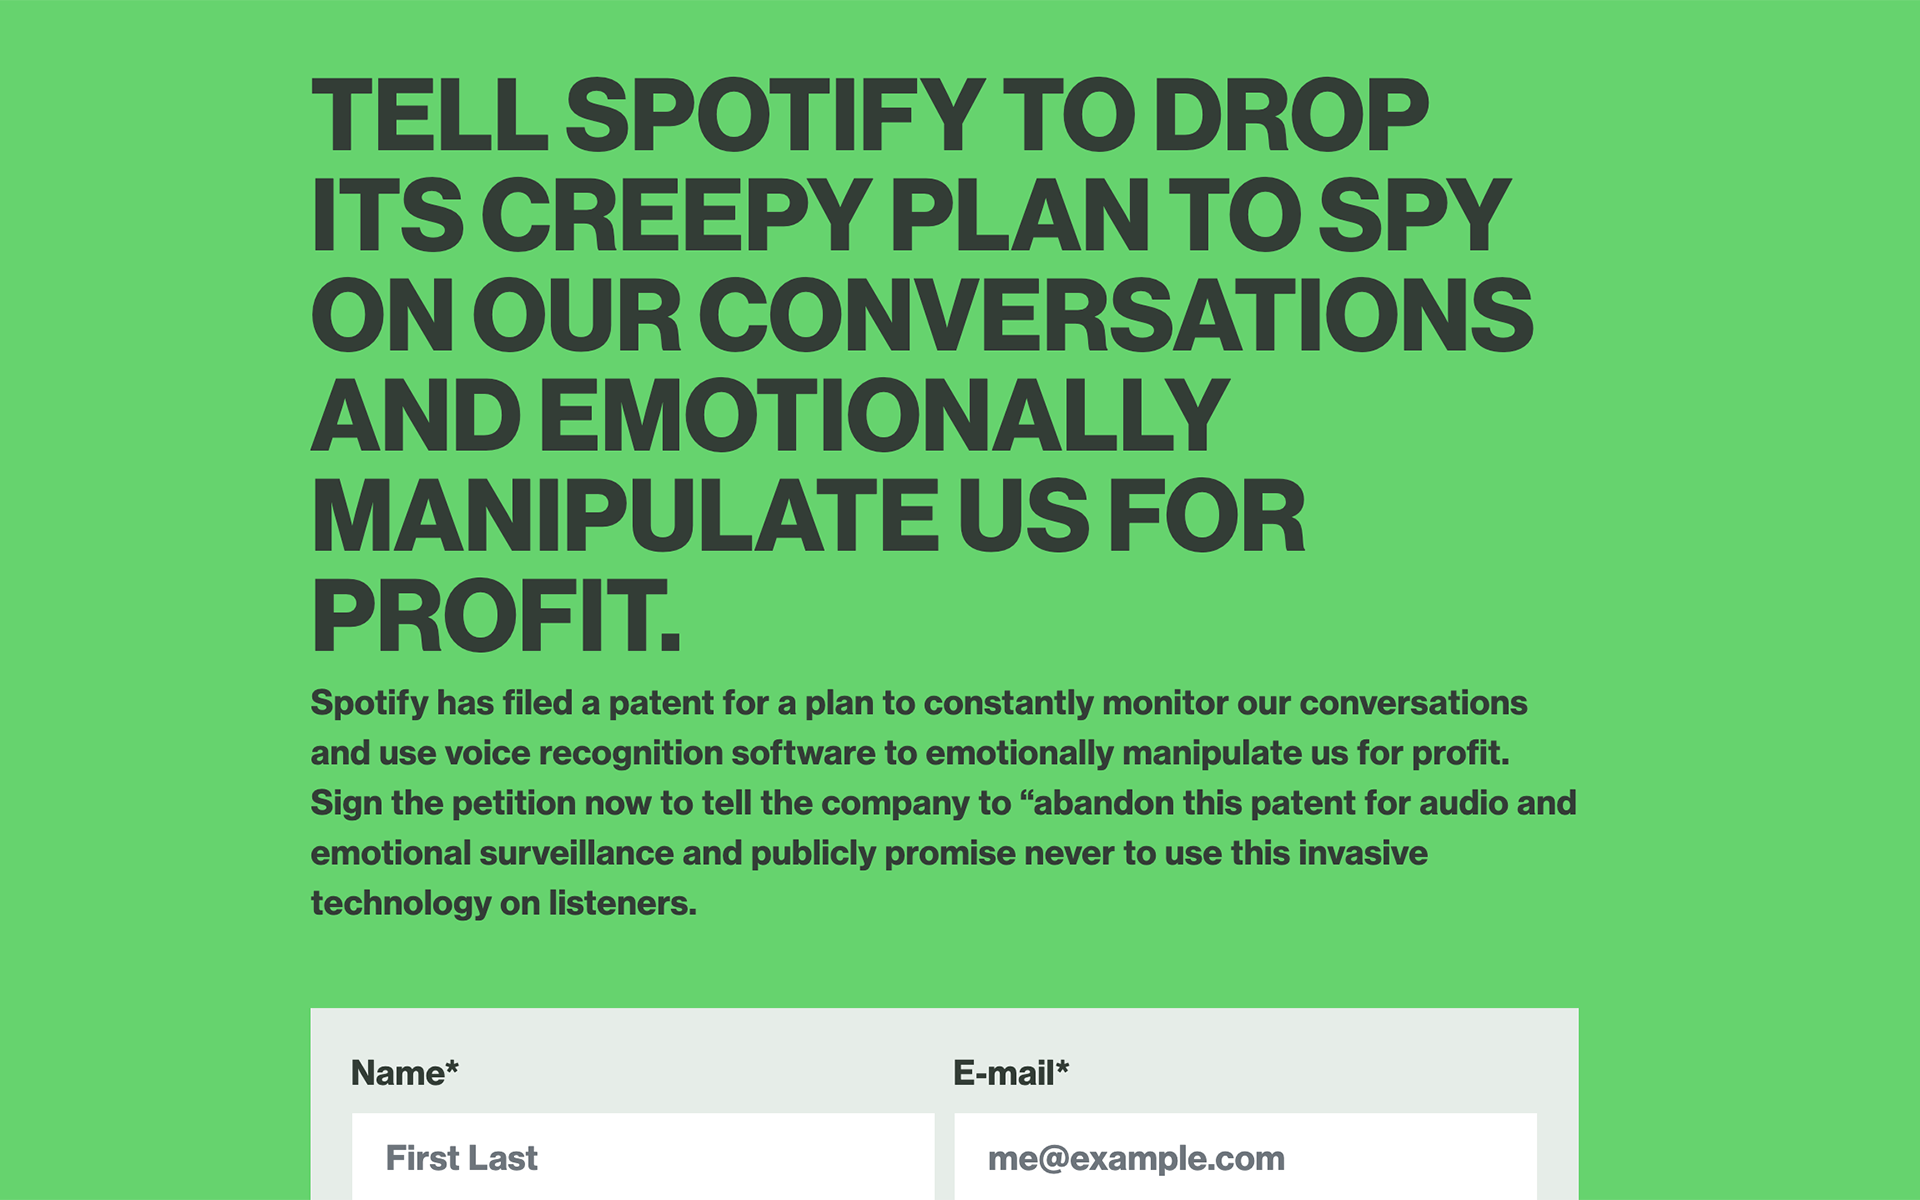 Spotify quiere espiarte y el mundo de la música no quiere permitirlo